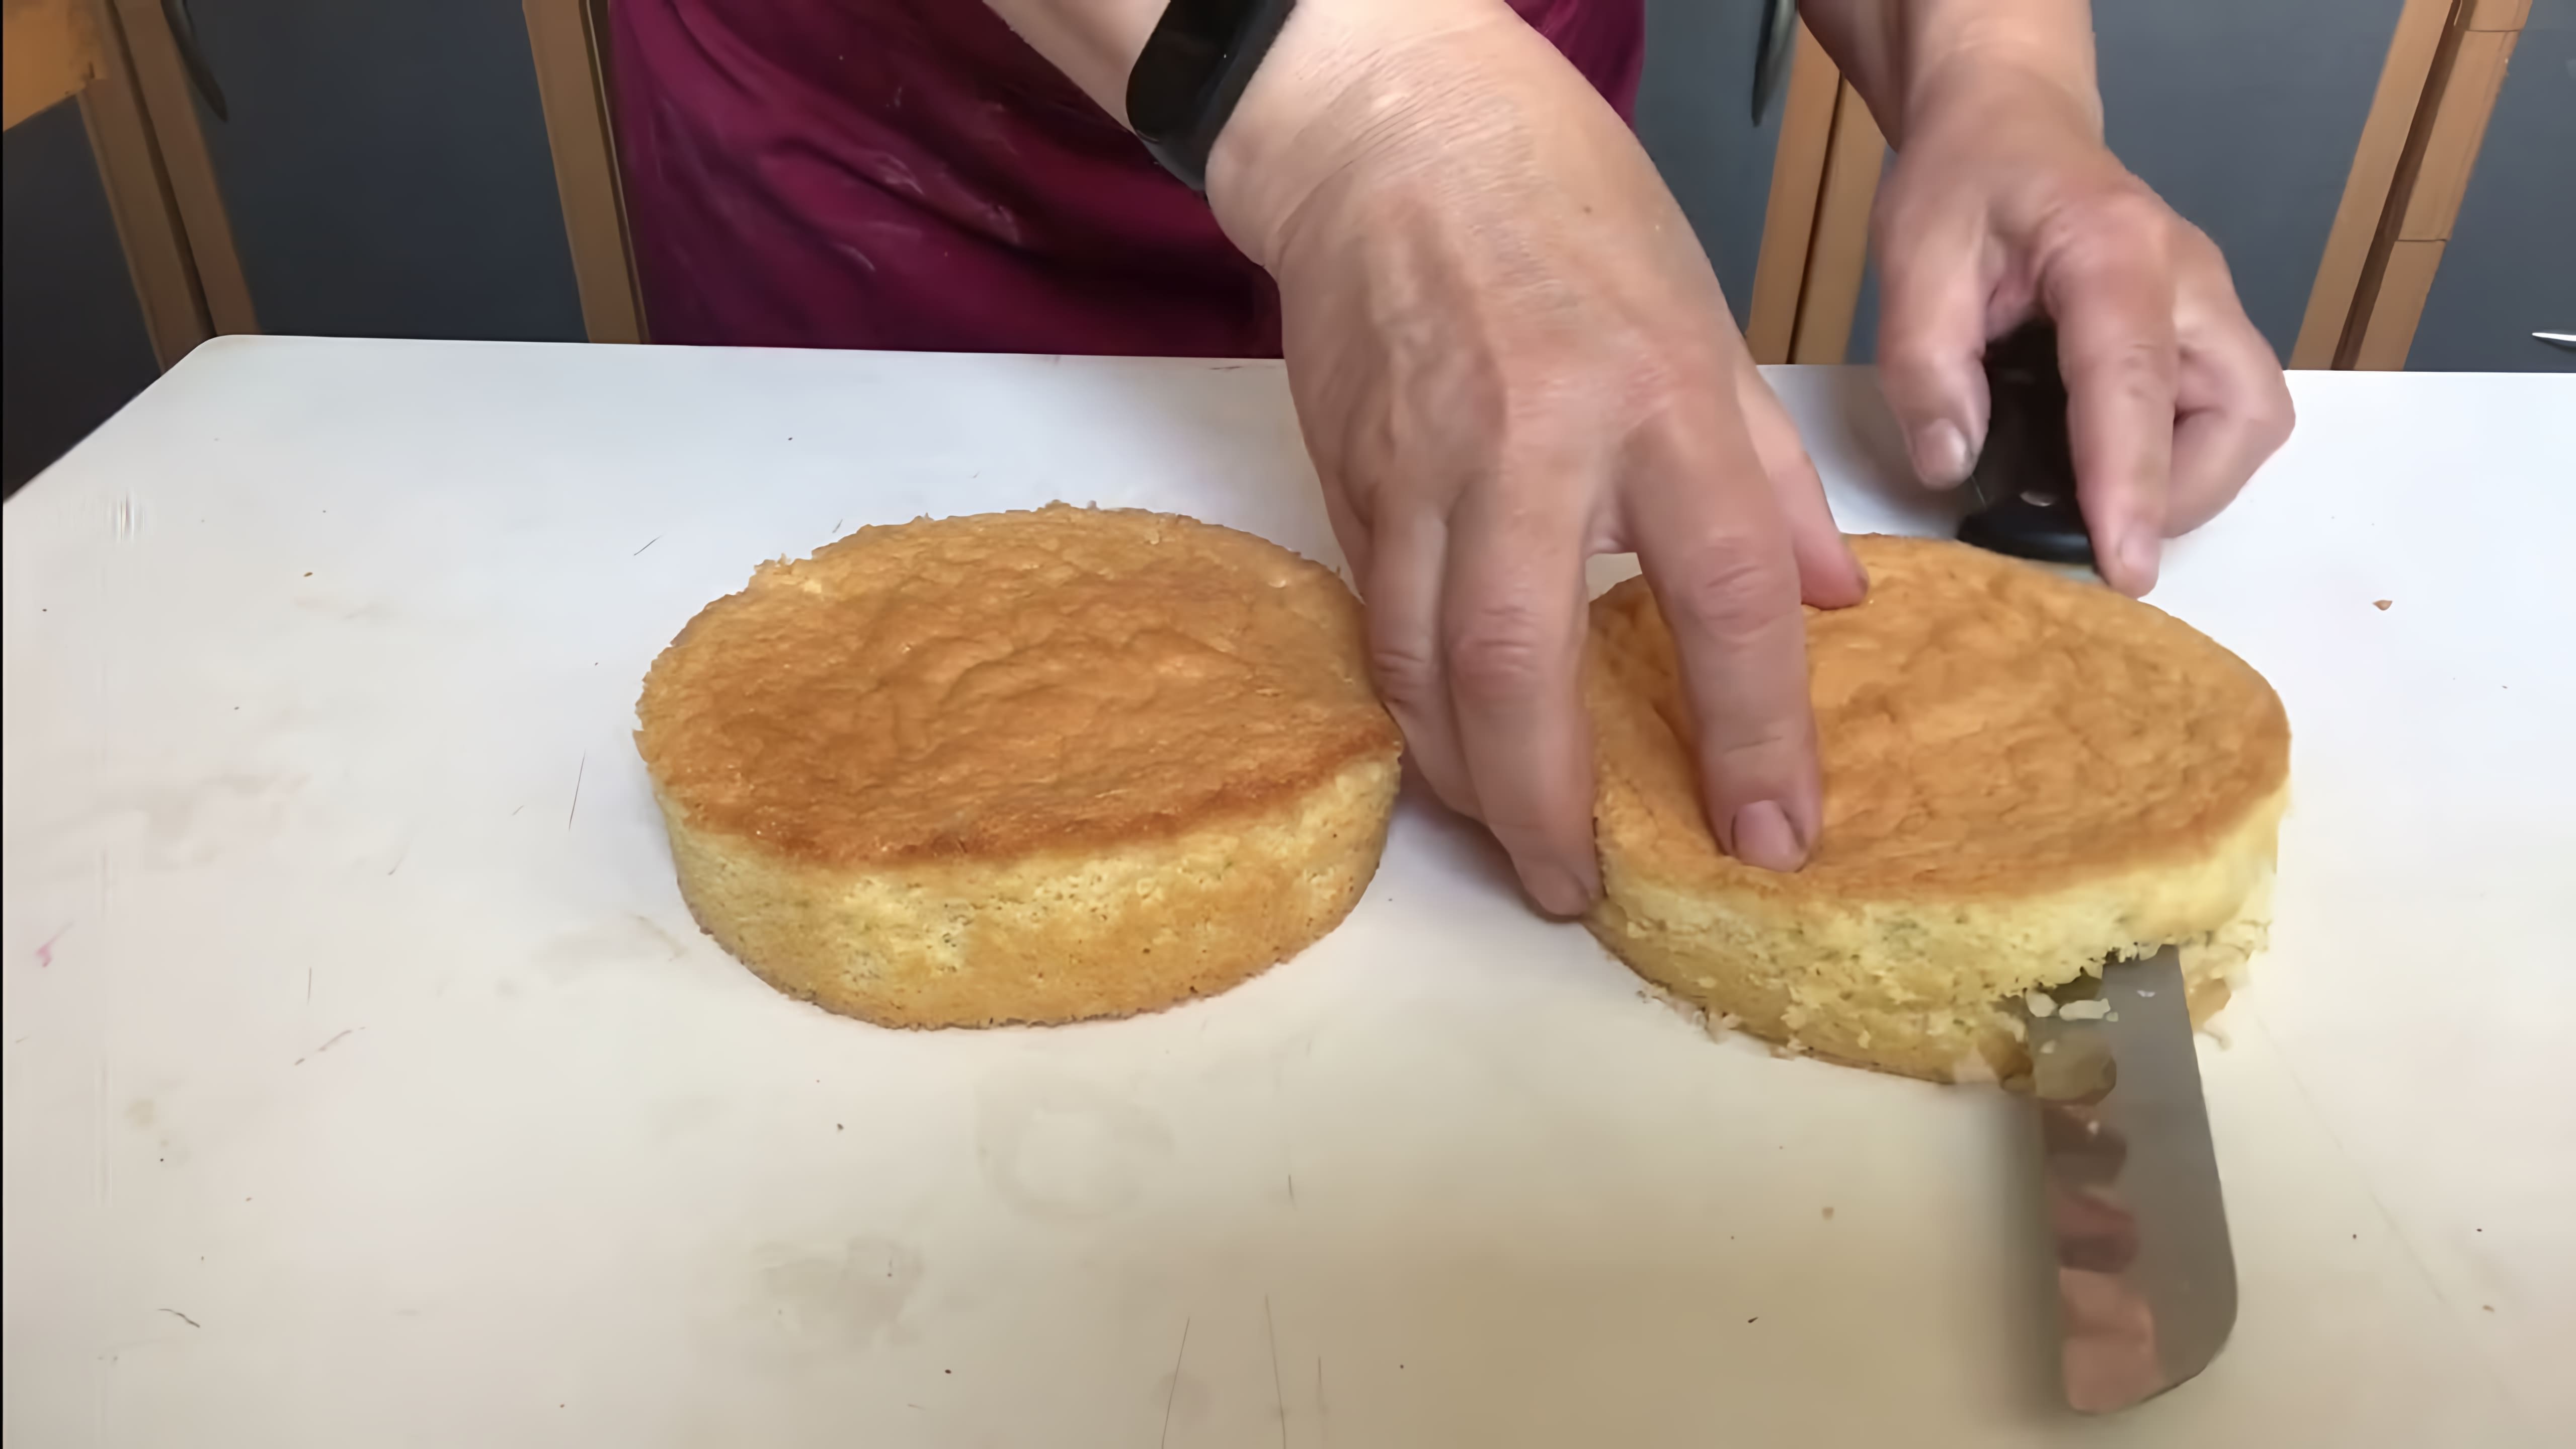 В этом видео демонстрируется процесс приготовления бэнто торта - маленького торта на двоих